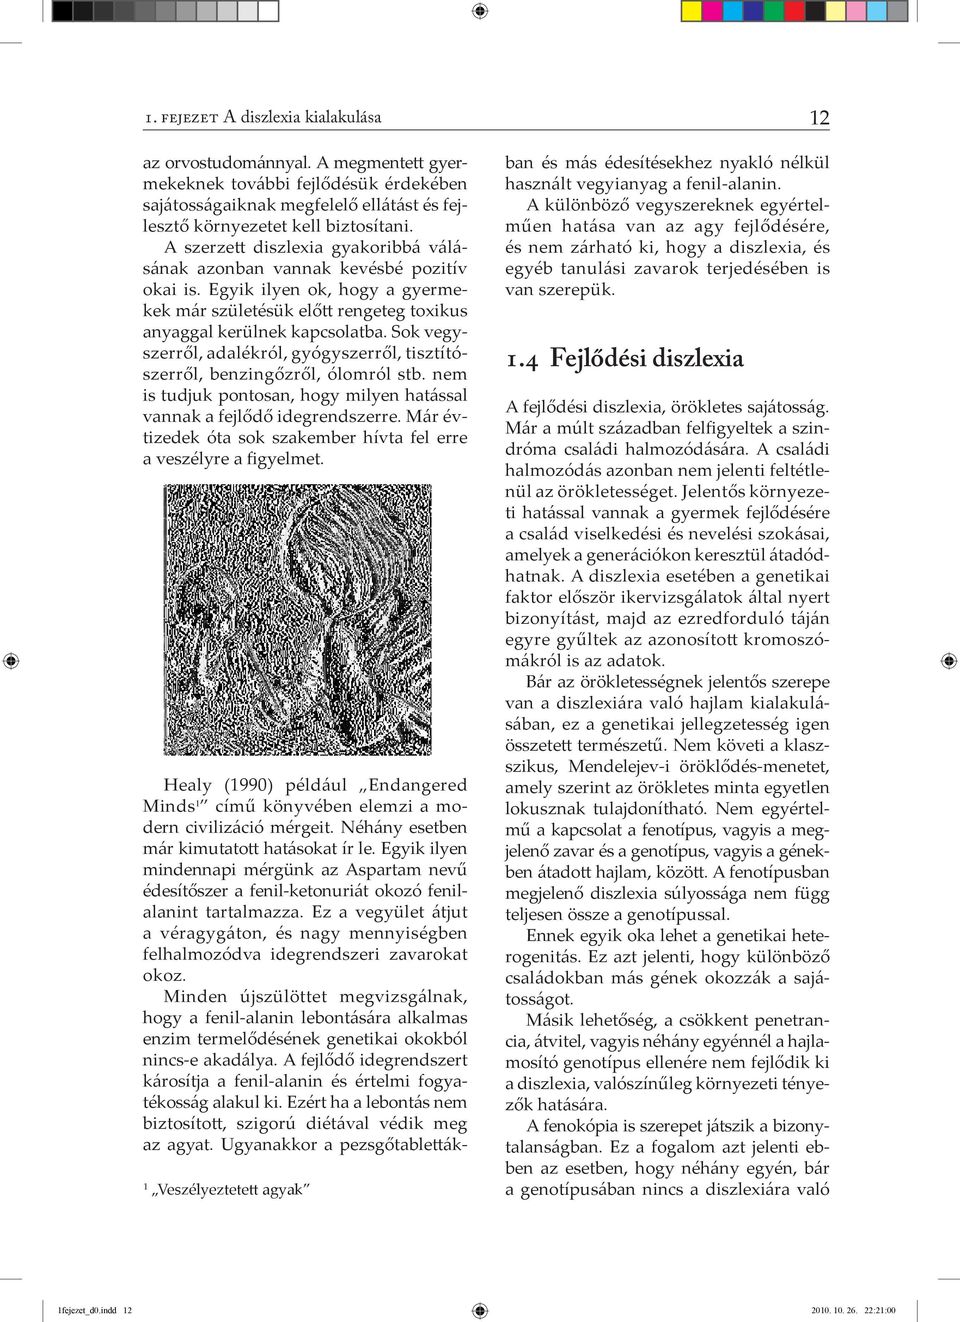 A diszlexia kialakulása - PDF Ingyenes letöltés